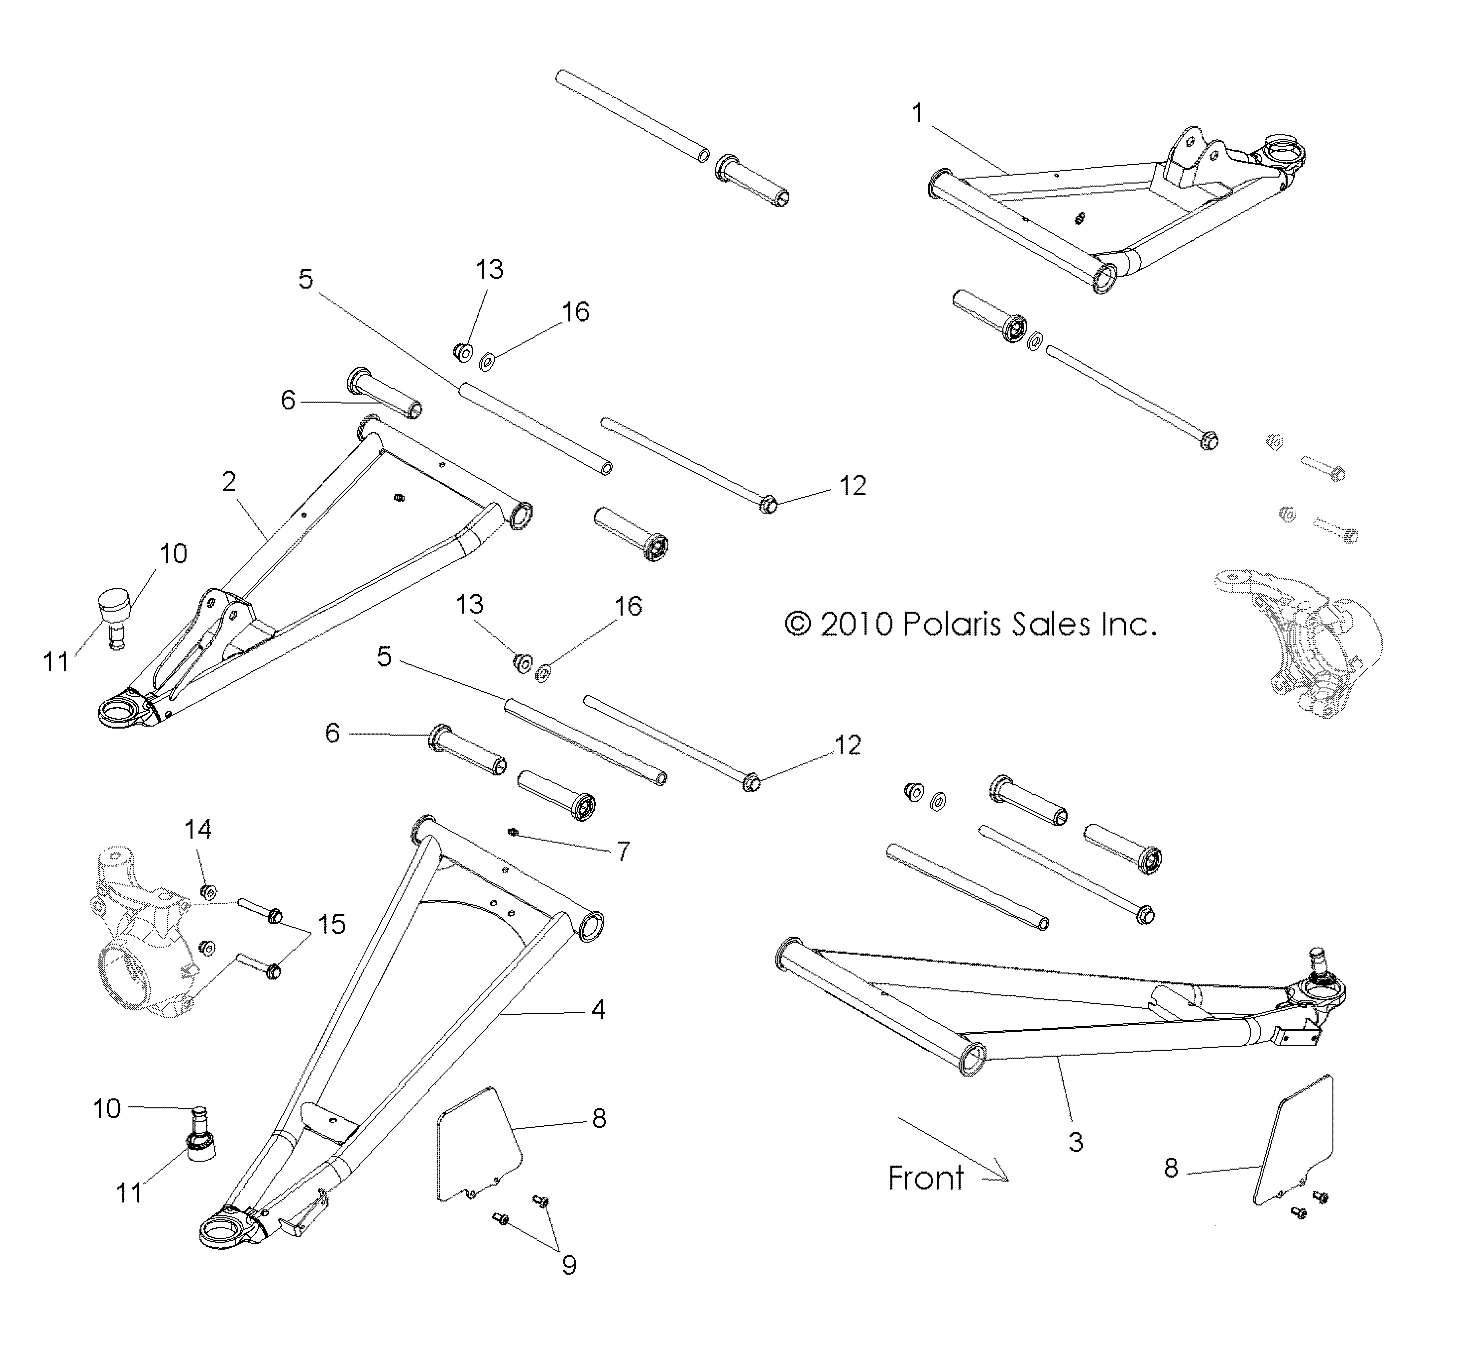 Foto diagrama Polaris que contem a peça 1017576-458